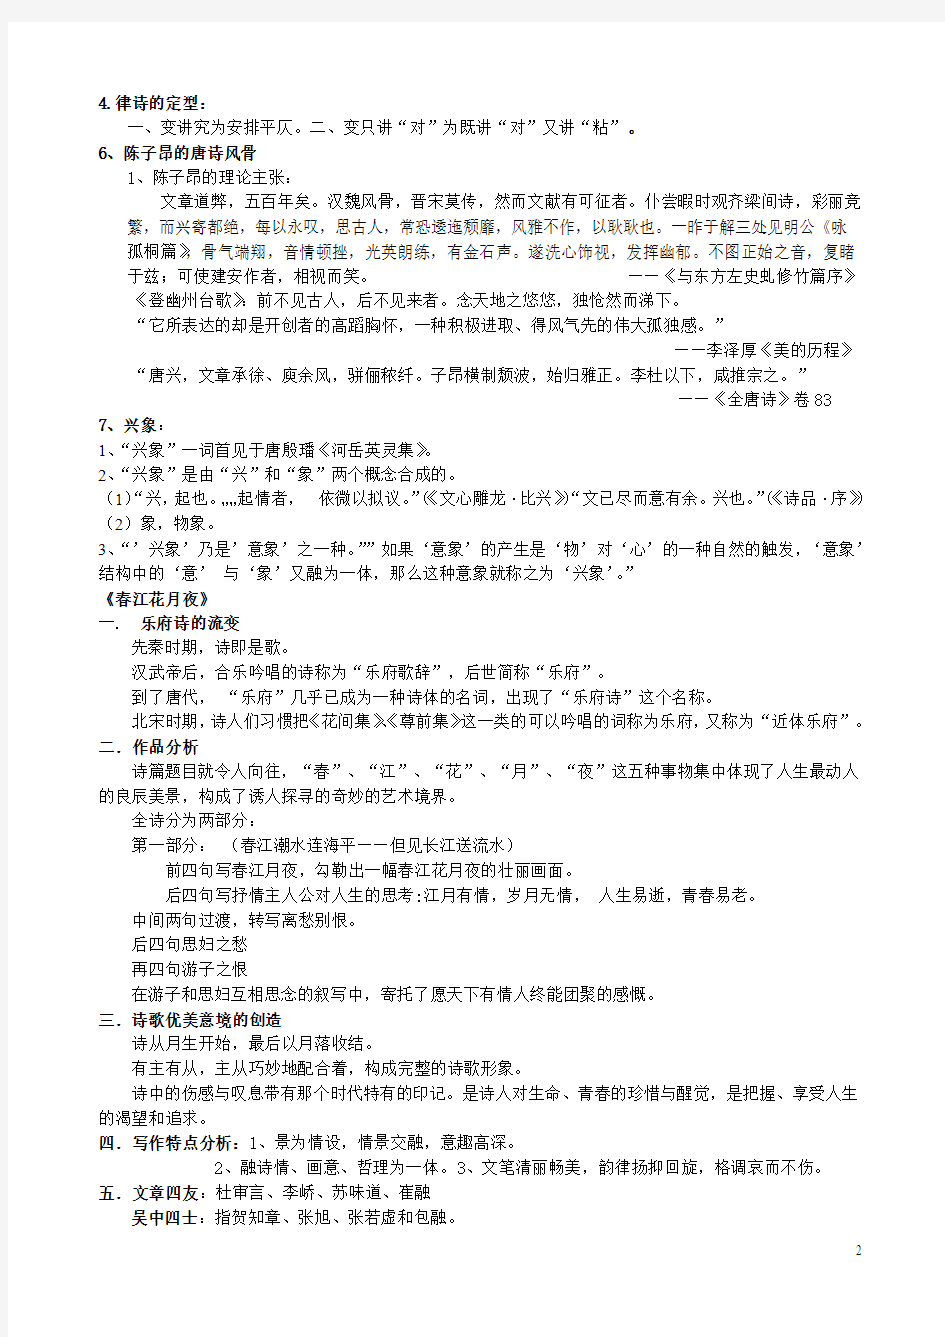 中国文学史(三) 笔记整理